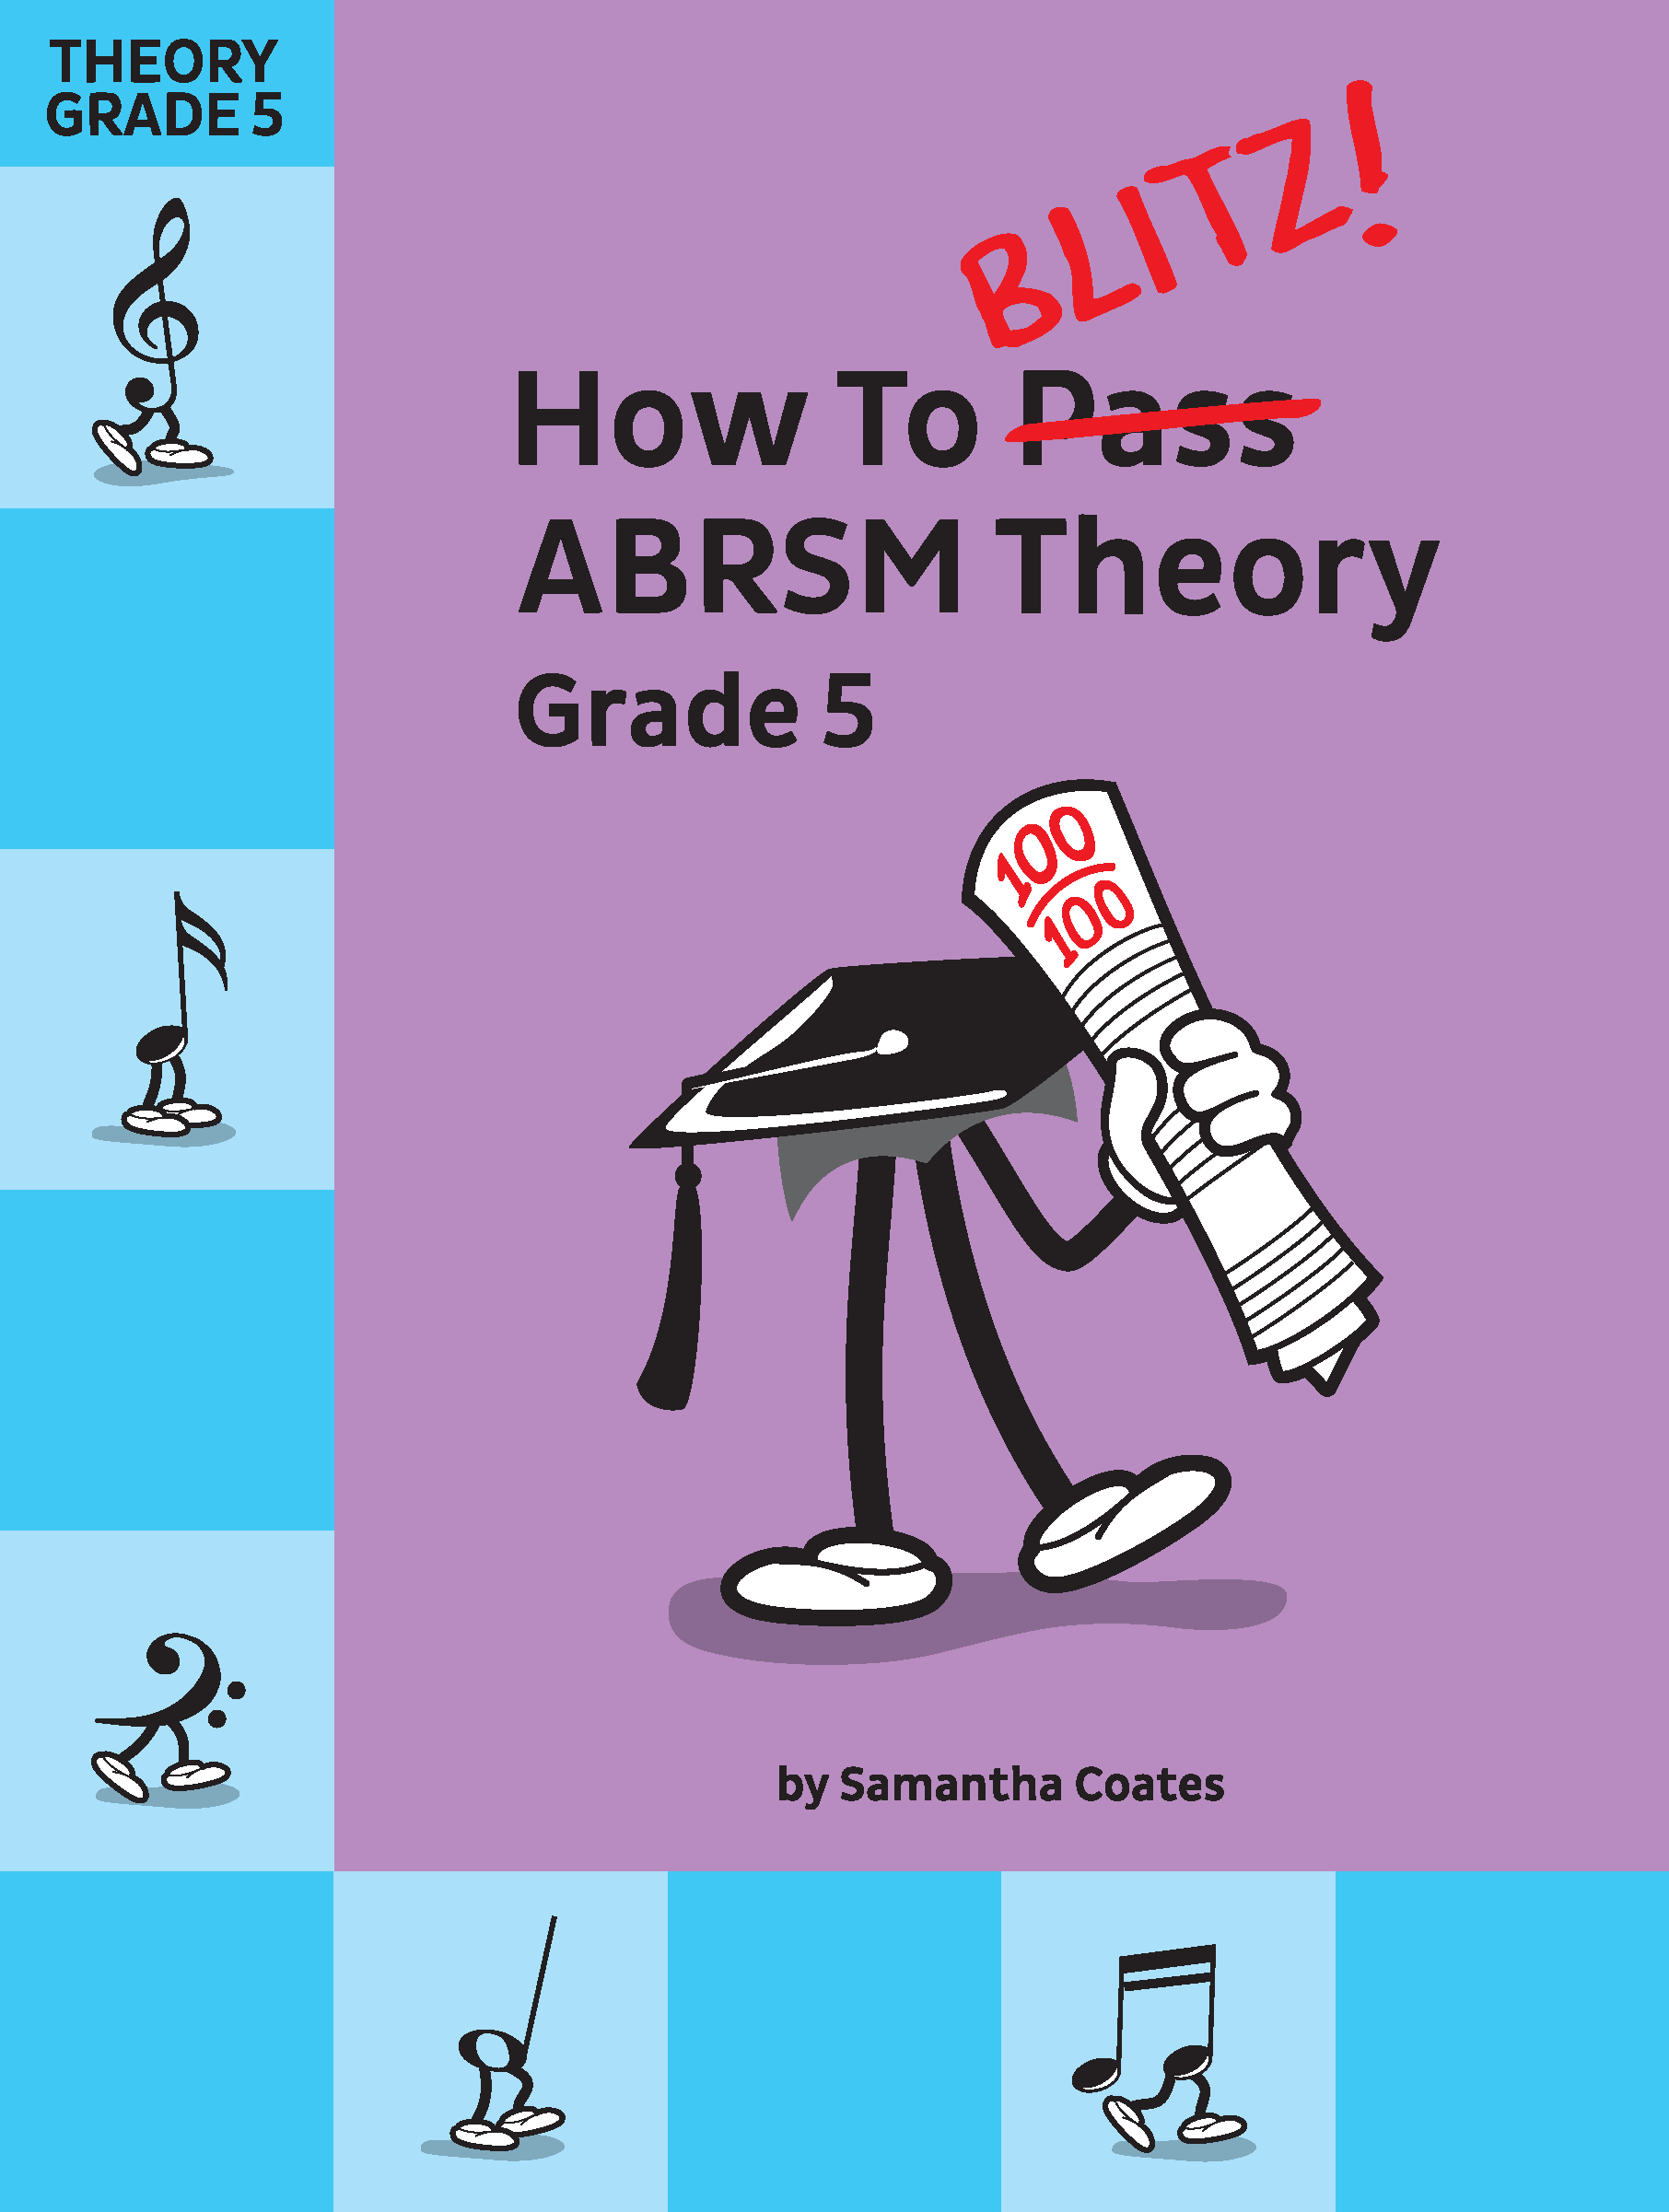 Grade 5 ABRSM Theory